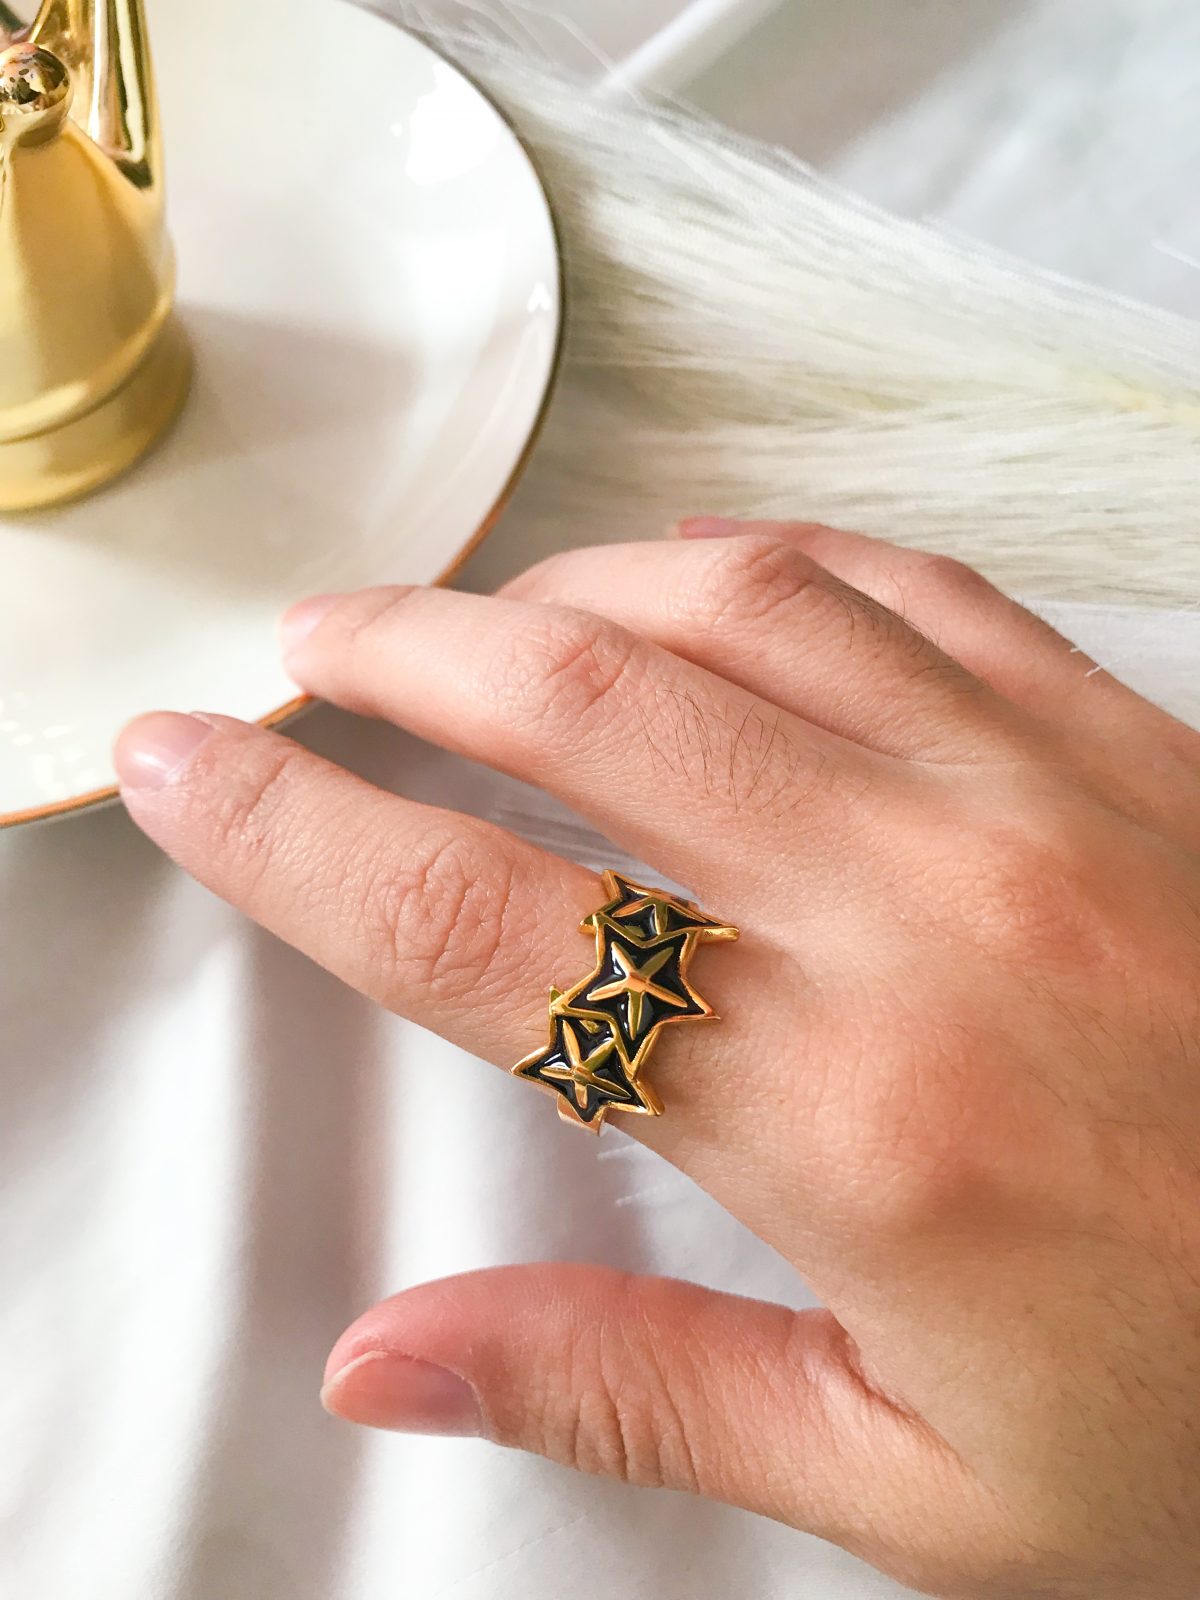 anillo dorado estrellas negras - ecuador - ropa gallardo - accesorios